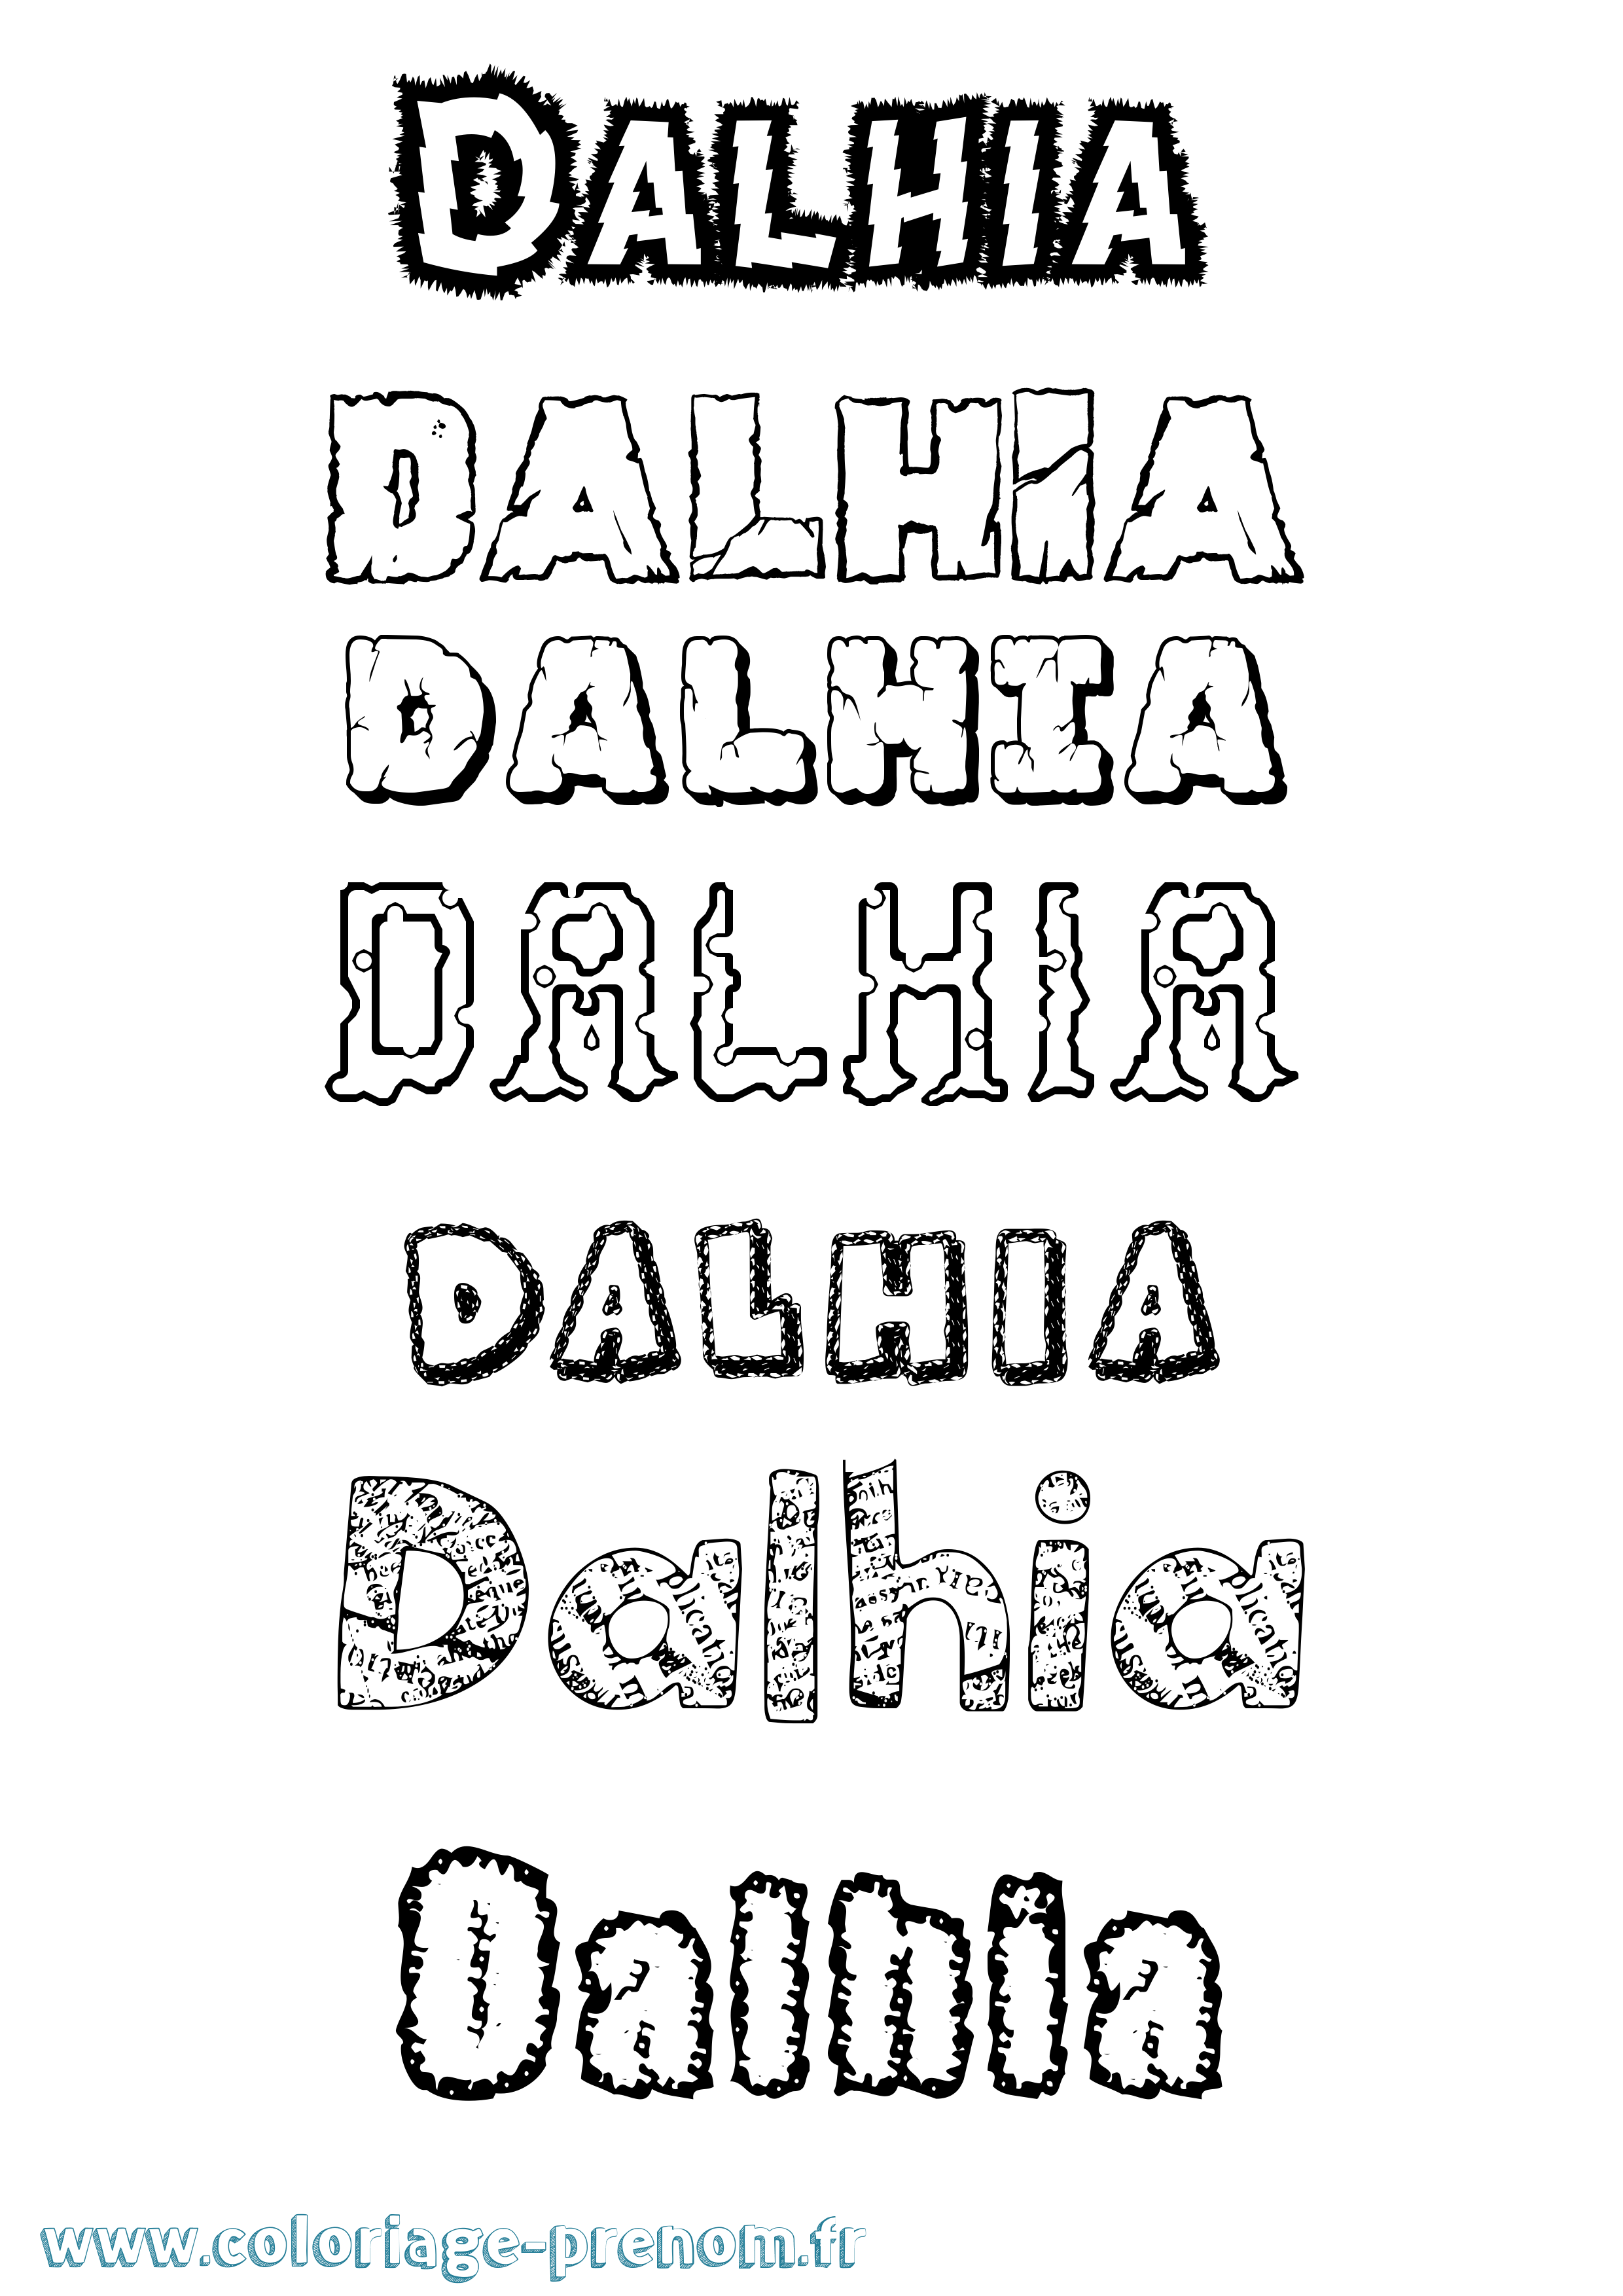 Coloriage prénom Dalhia Destructuré